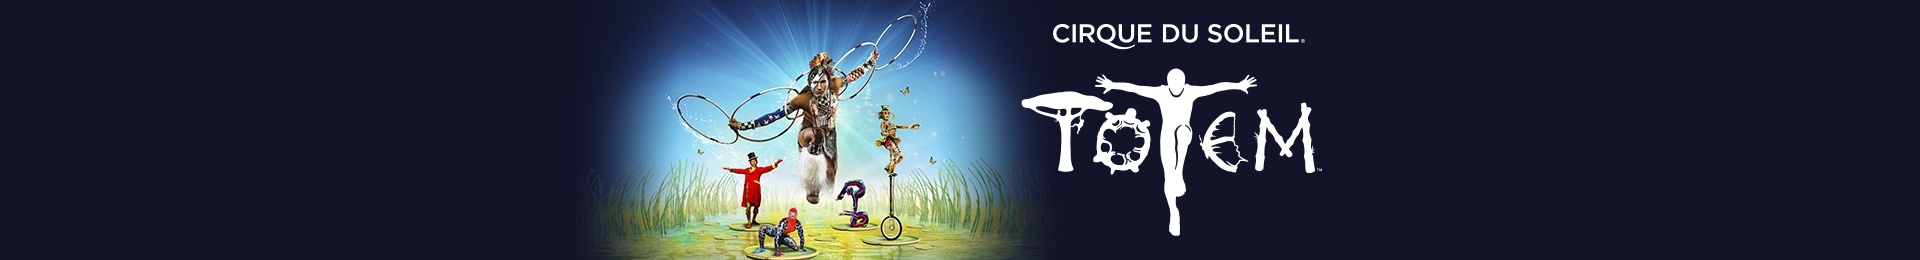 Cirque du Soleil: Totem banner image